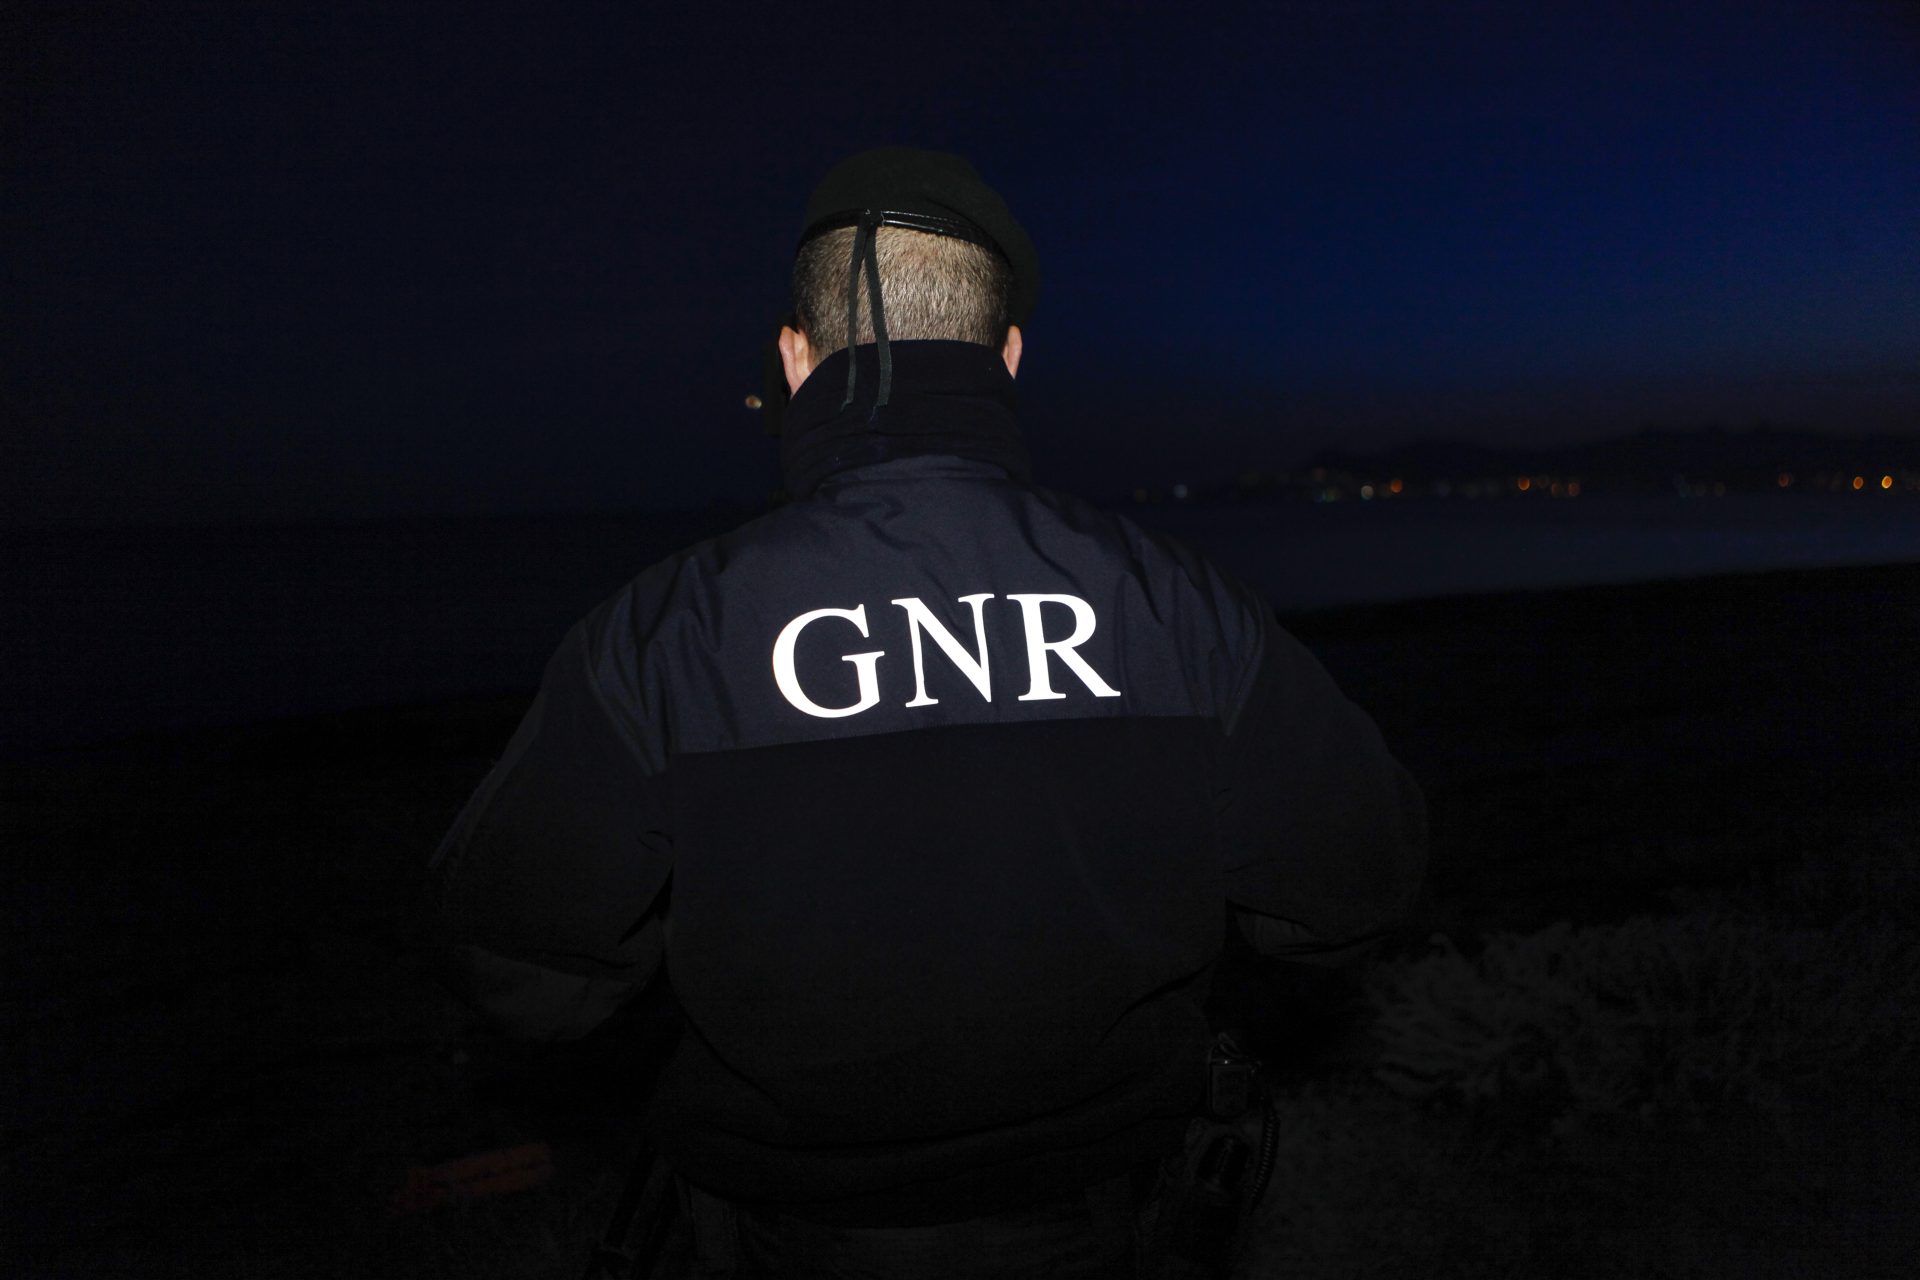 Suspeitas de maus tratos leva GNR a encerrar lar em Rio Maior